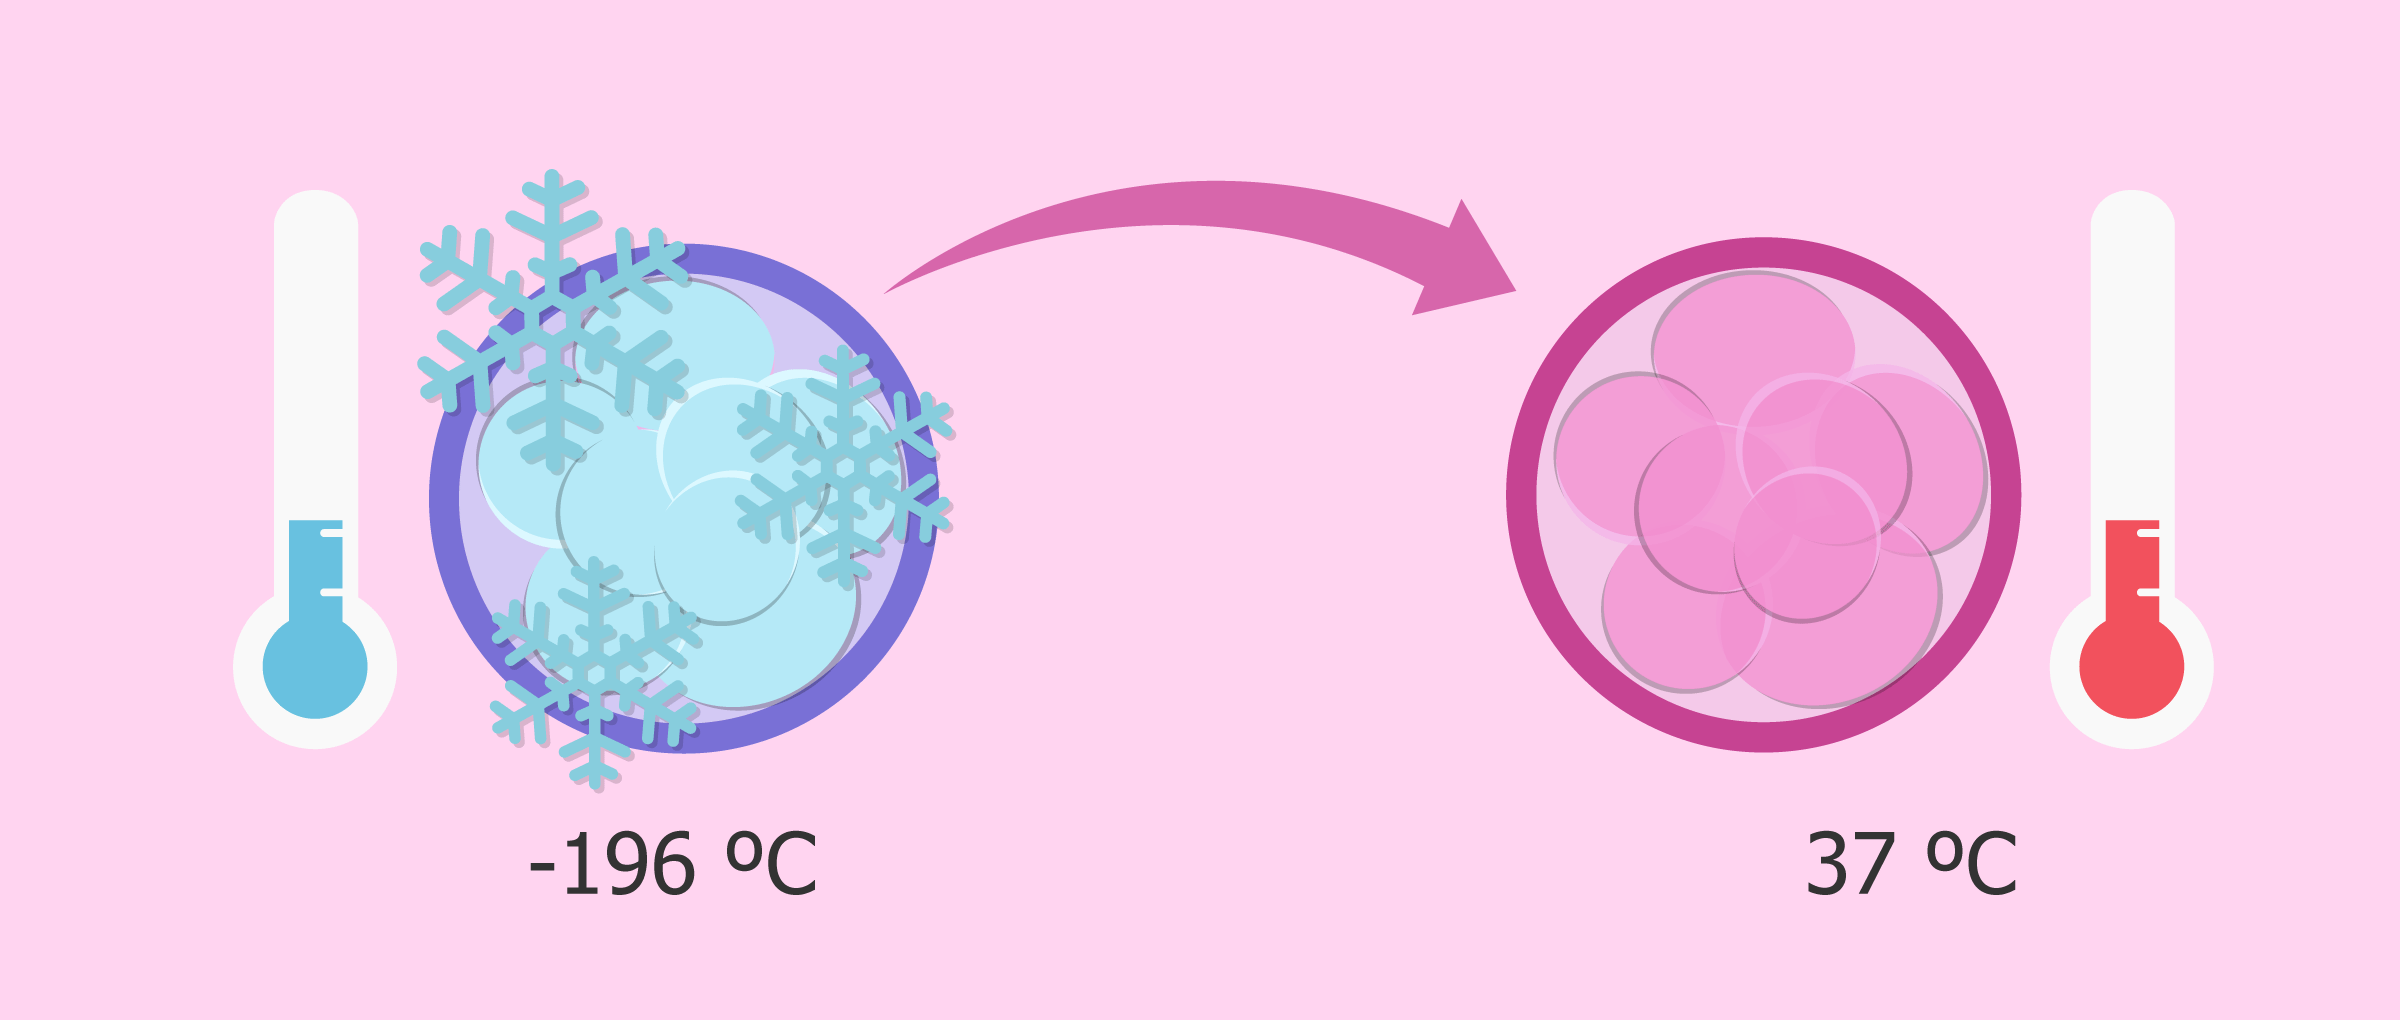 Descongelación de los embriones para transferir